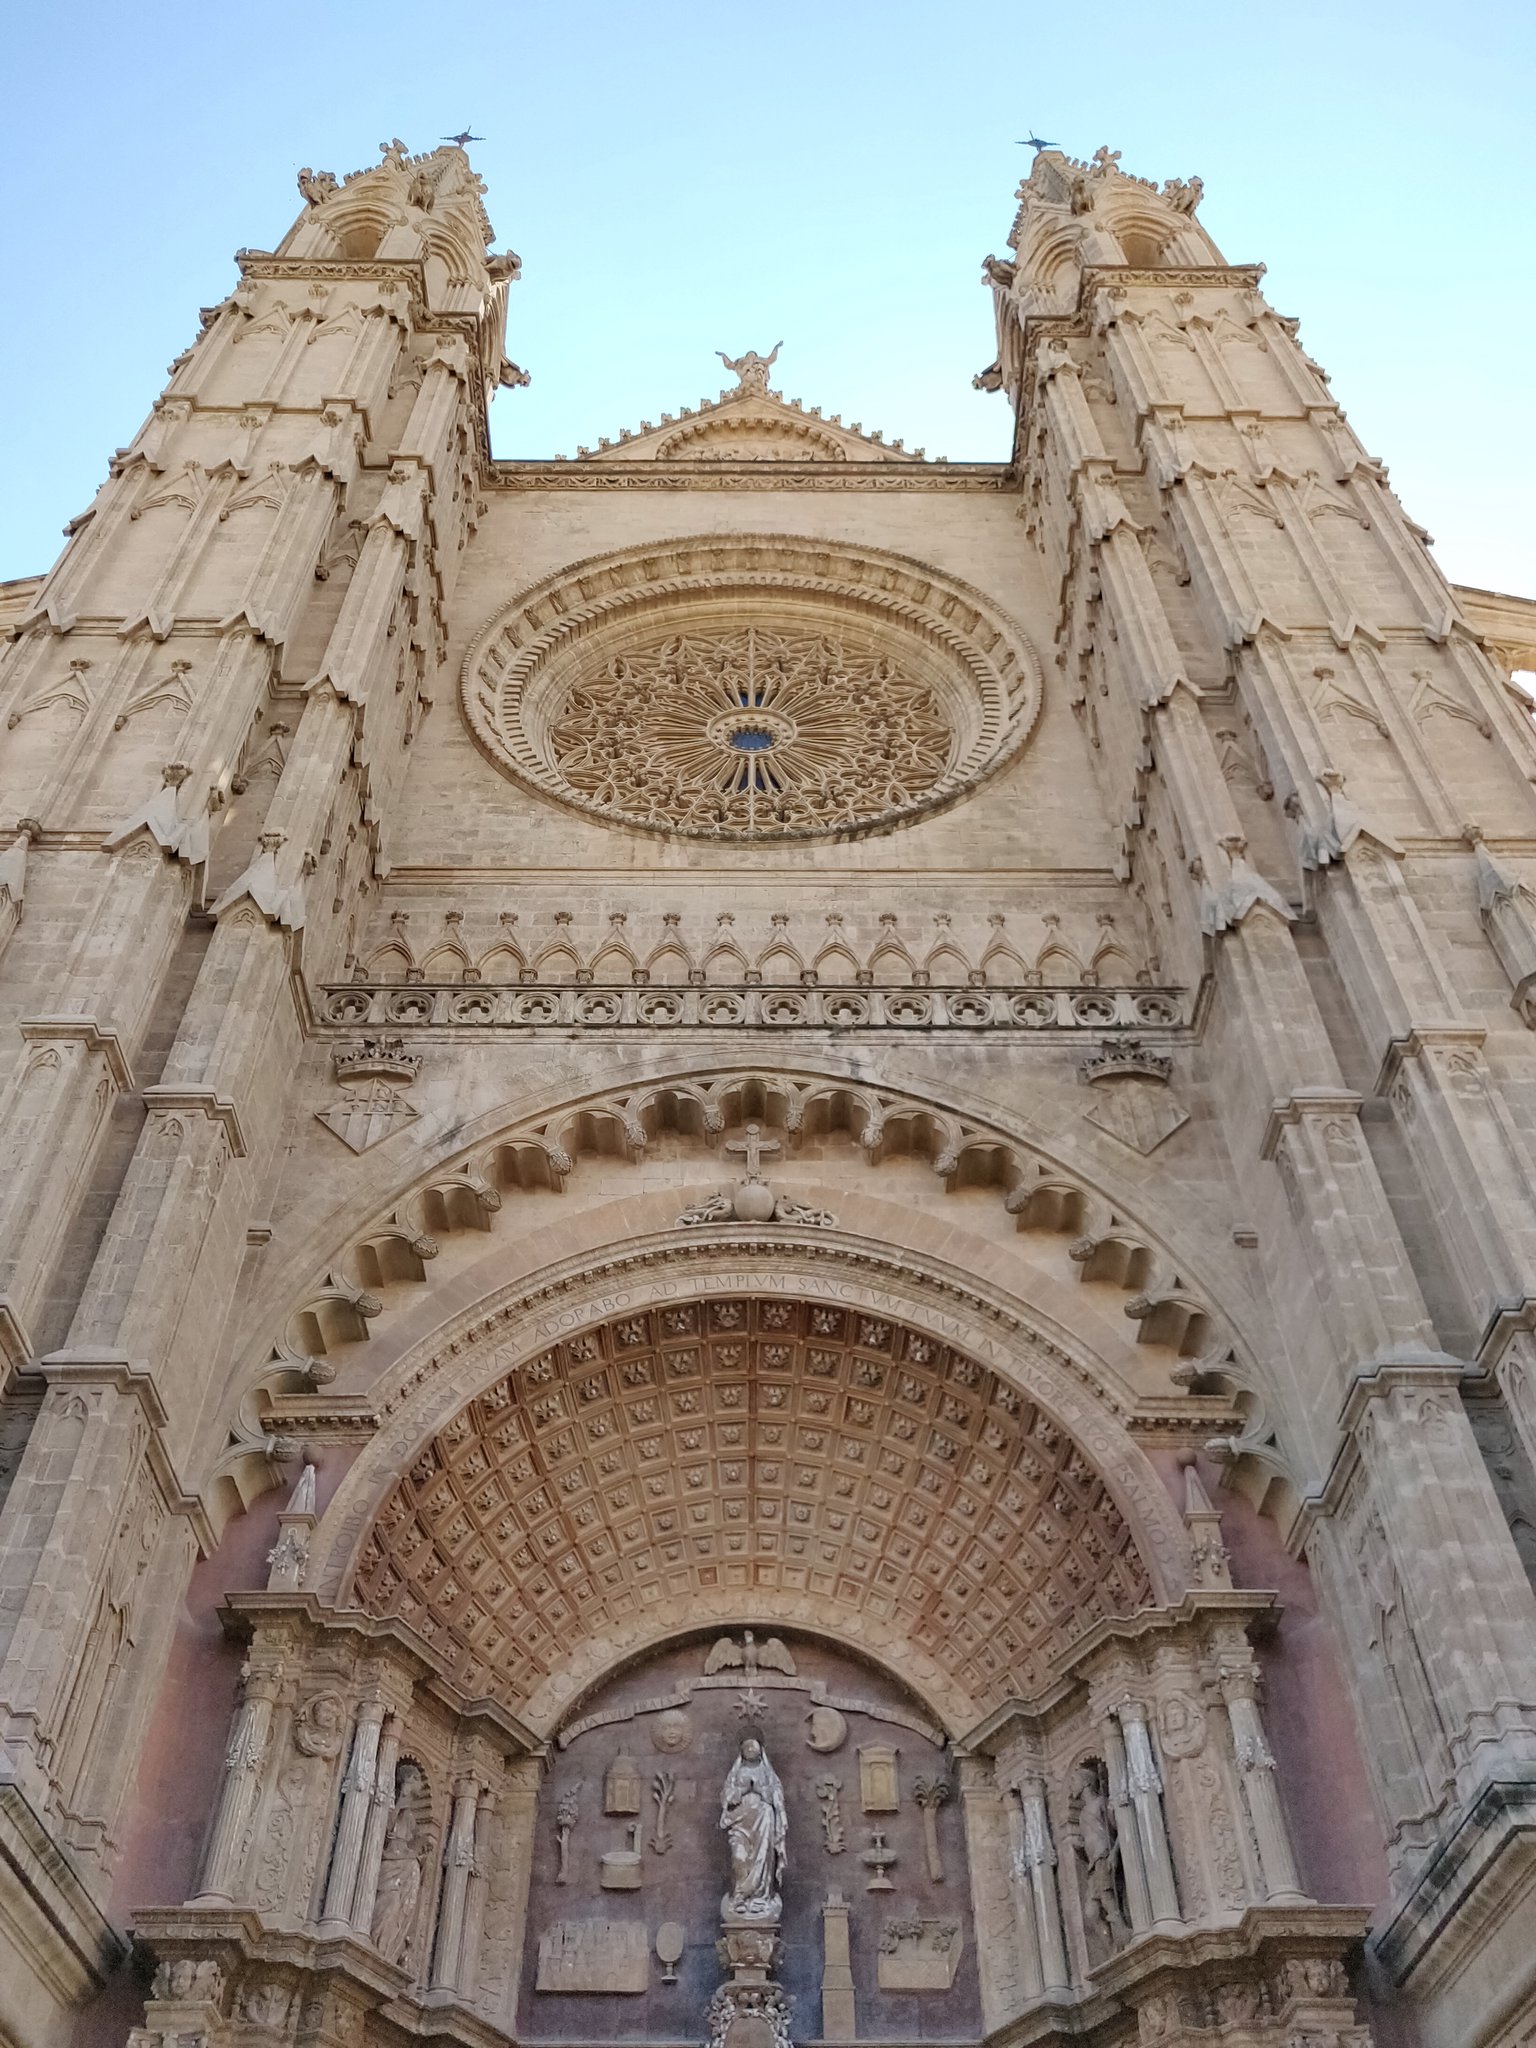  Cathedral of Santa Maria, Palma 